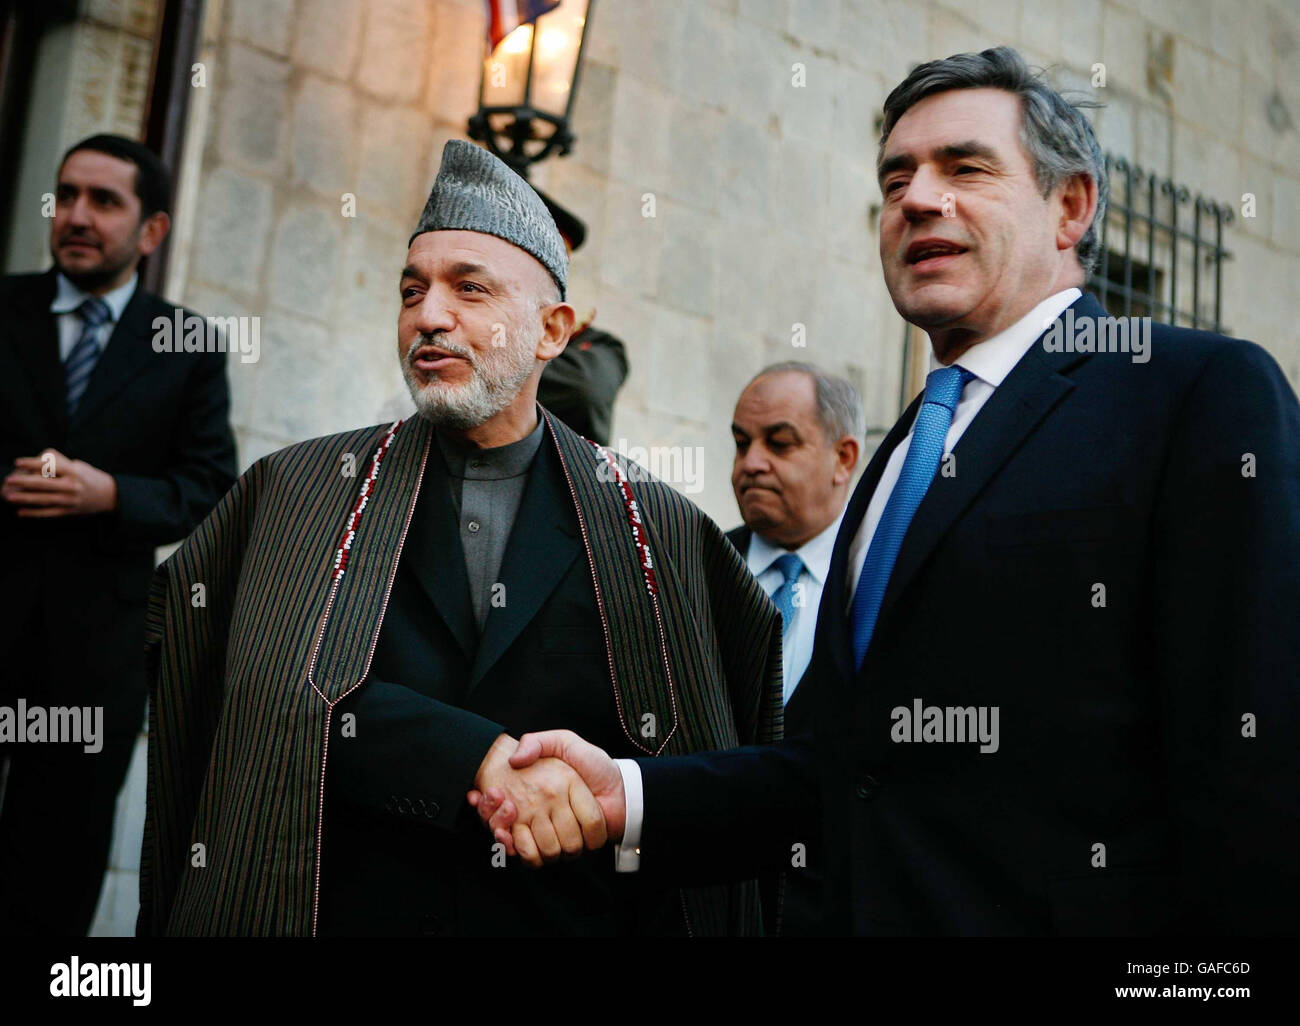 Le Premier ministre Gordon Brown (à droite) rencontre le président Karzaï à Kaboul, en Afghanistan. Banque D'Images